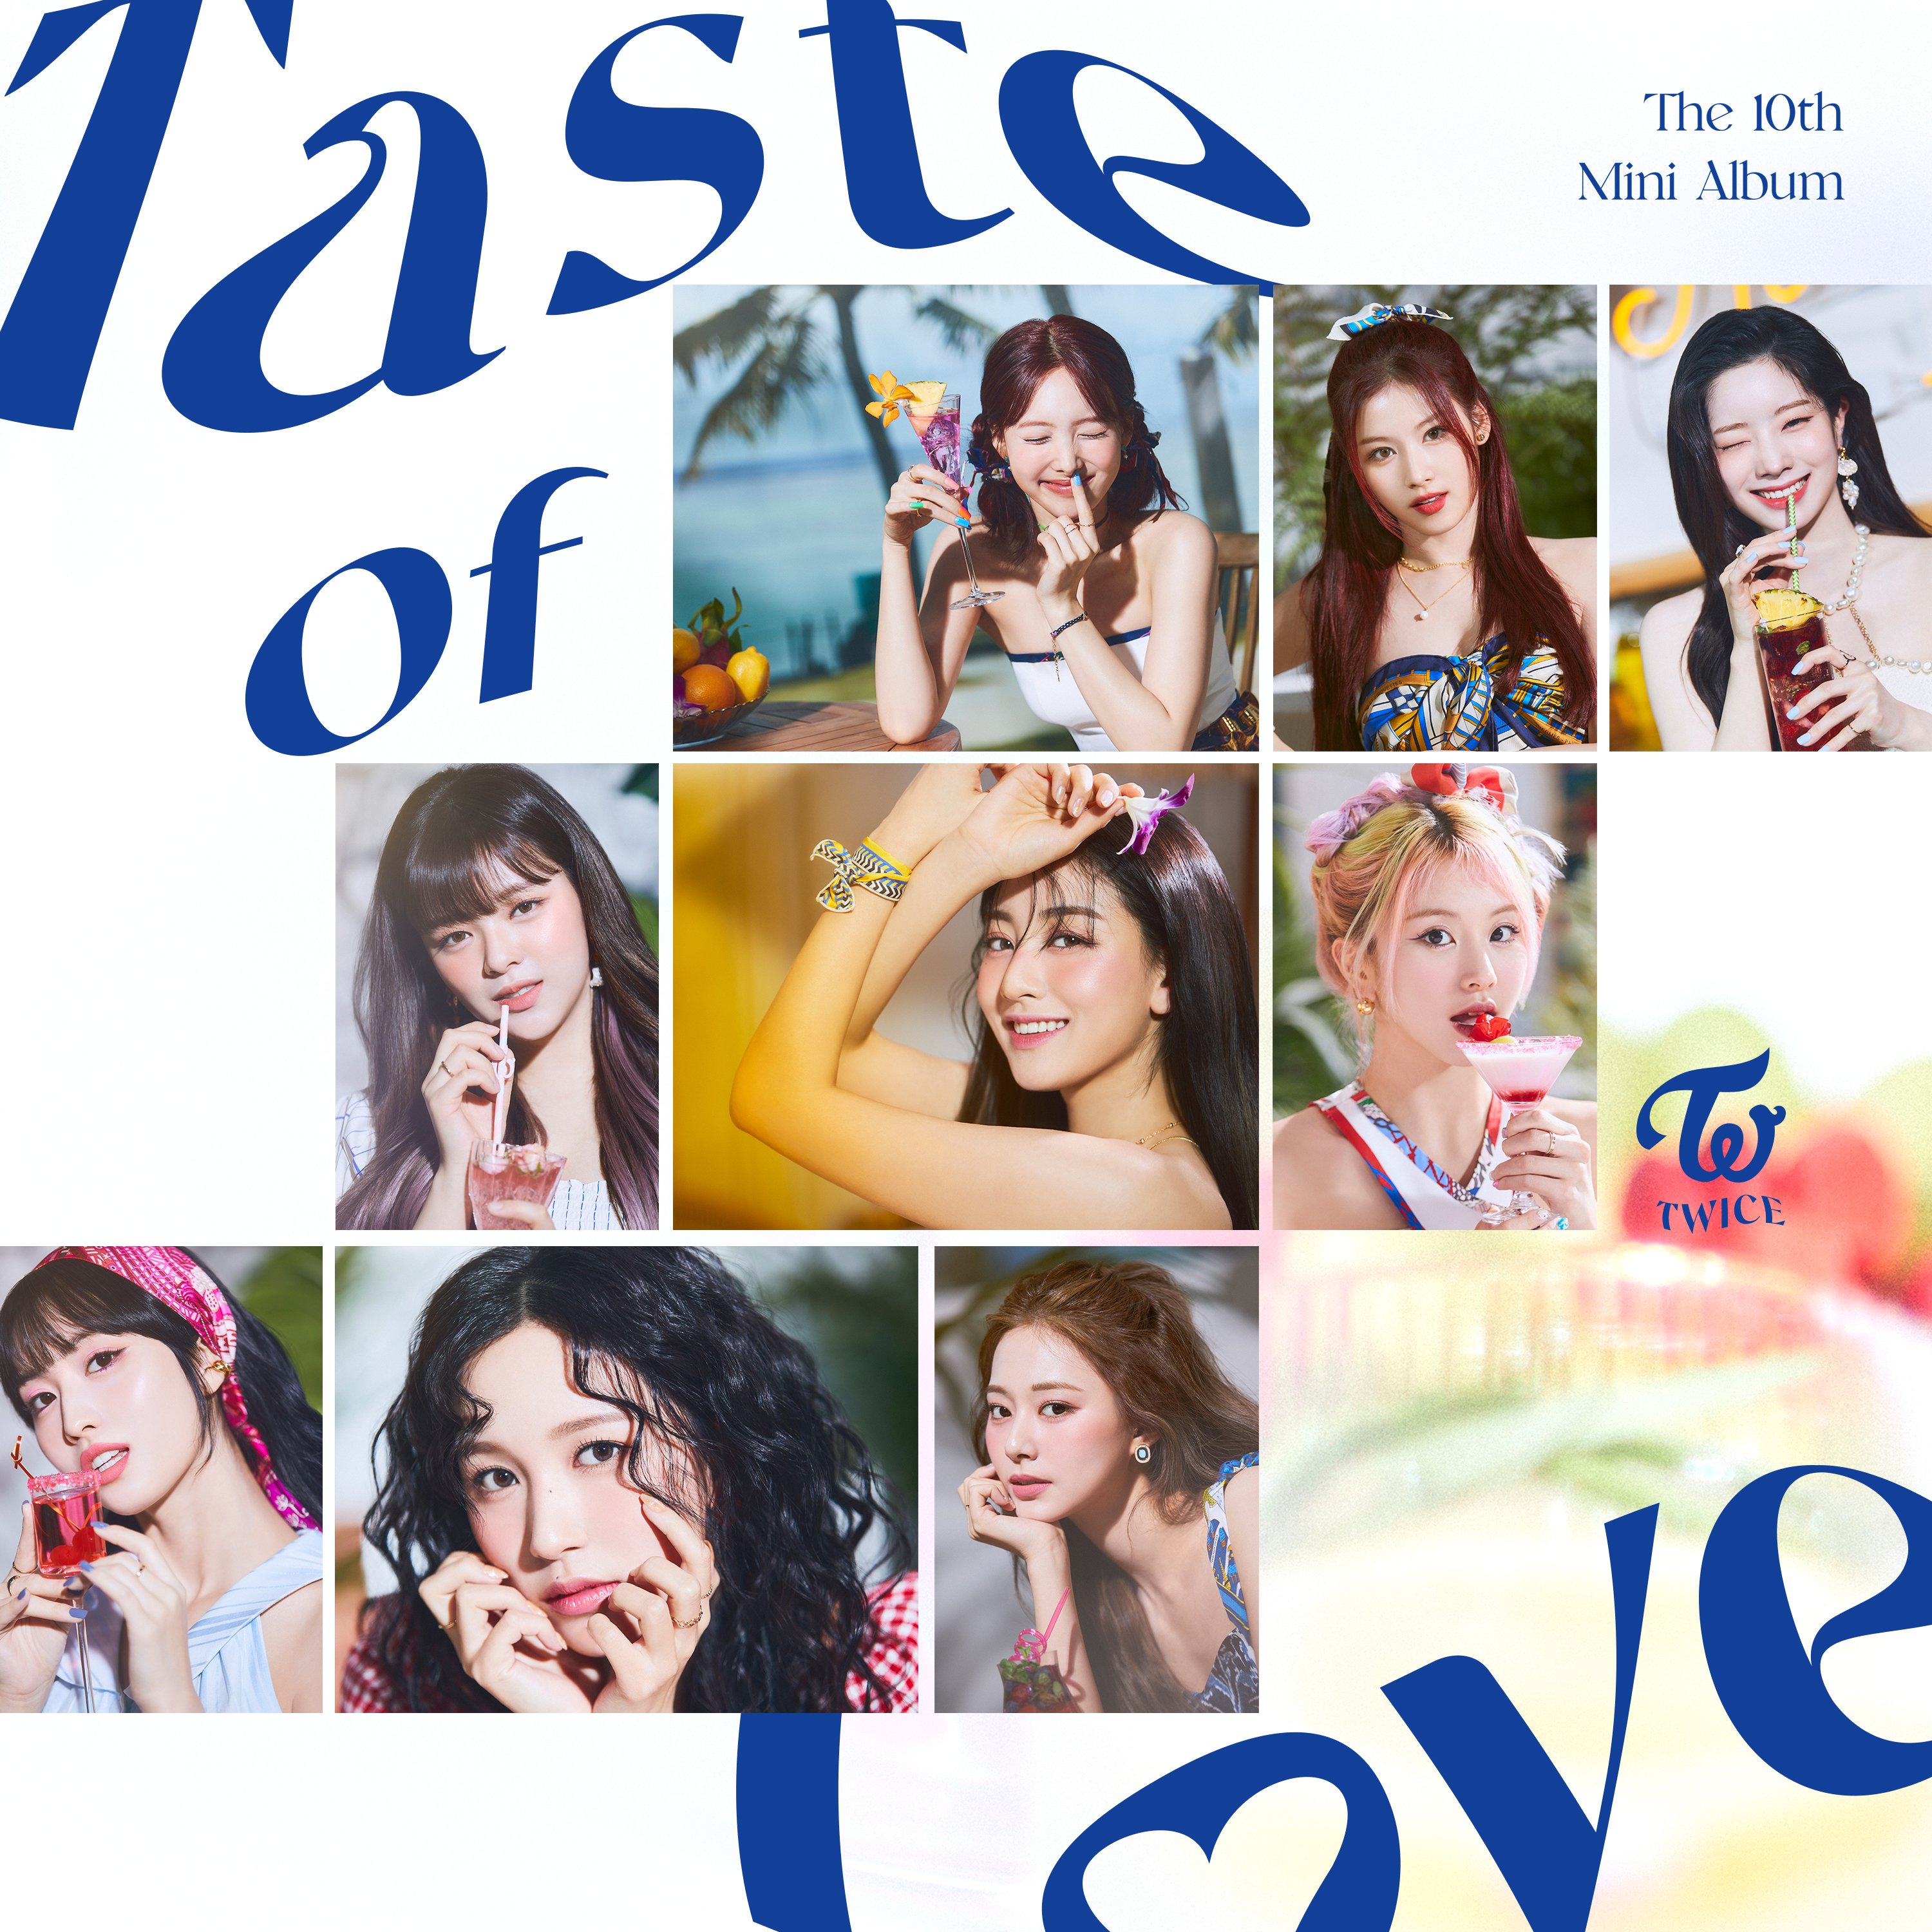 Taste of Love, Twice Wiki